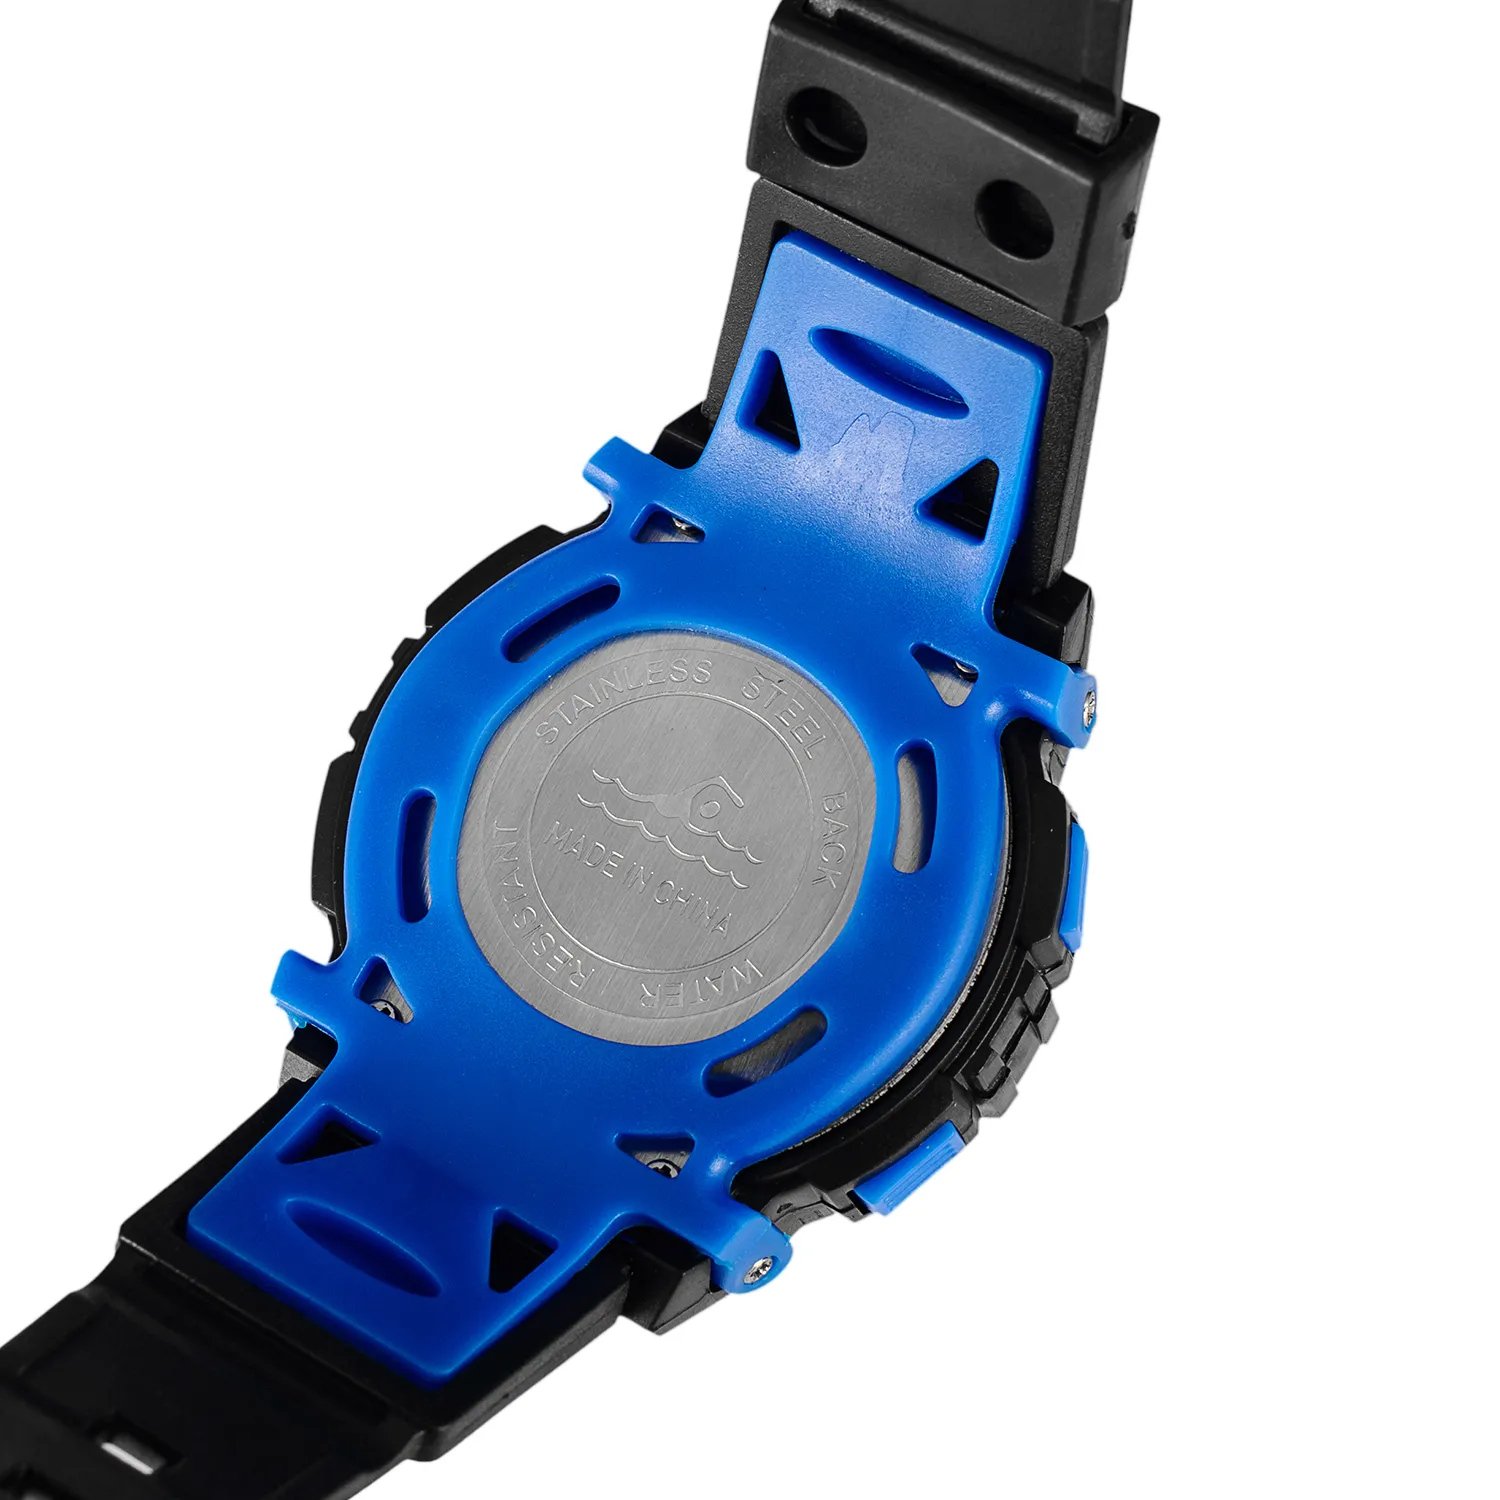 SYNOKE LED montre numérique pour enfants montres pour enfants filles garçons horloge enfant Sport montre-bracelet montre numérique pour fille garçon Surprise cadeau 254G